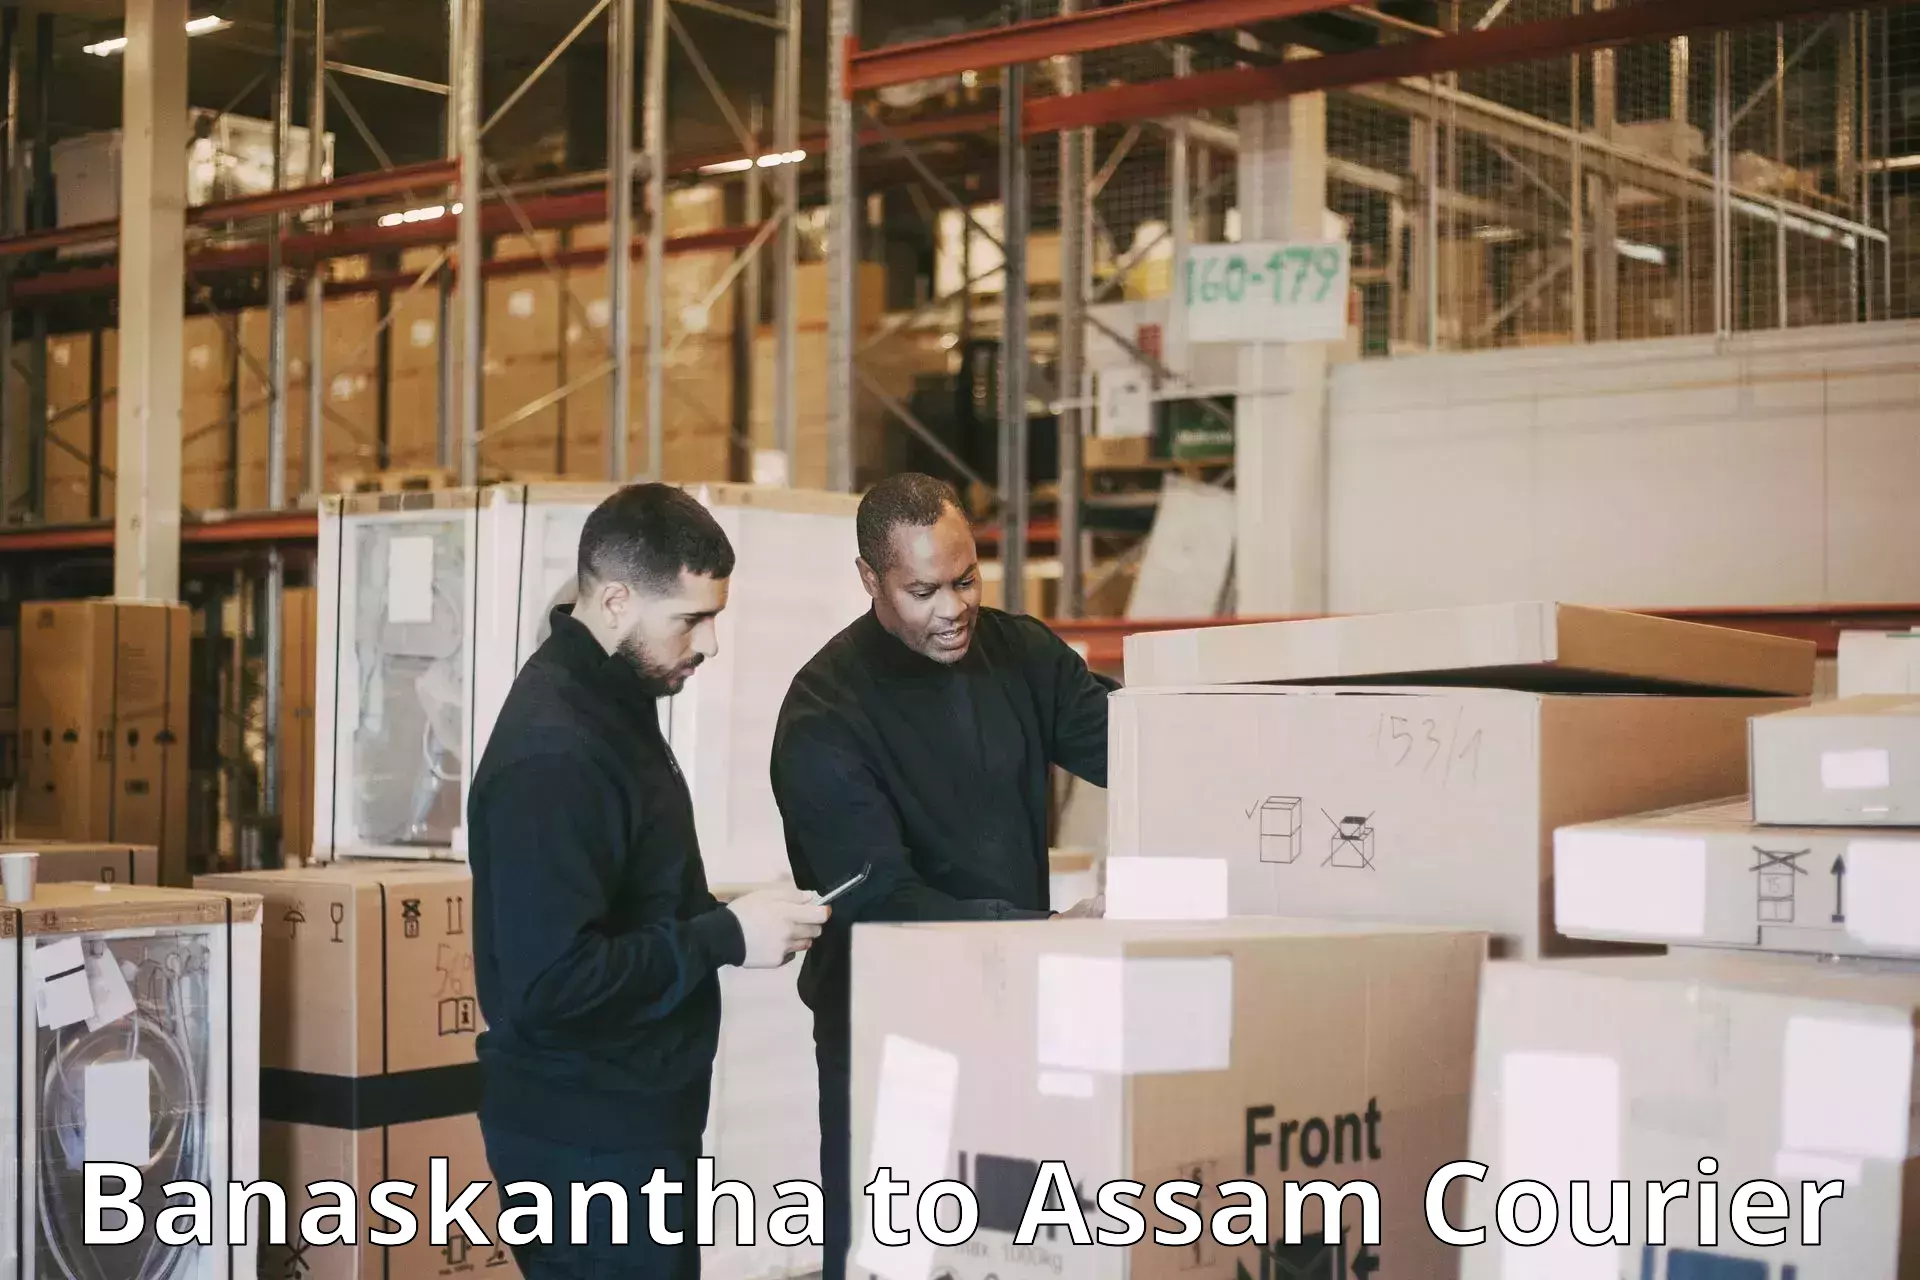 Customer-centric shipping Banaskantha to Ramkrishna Nagar Karimganj